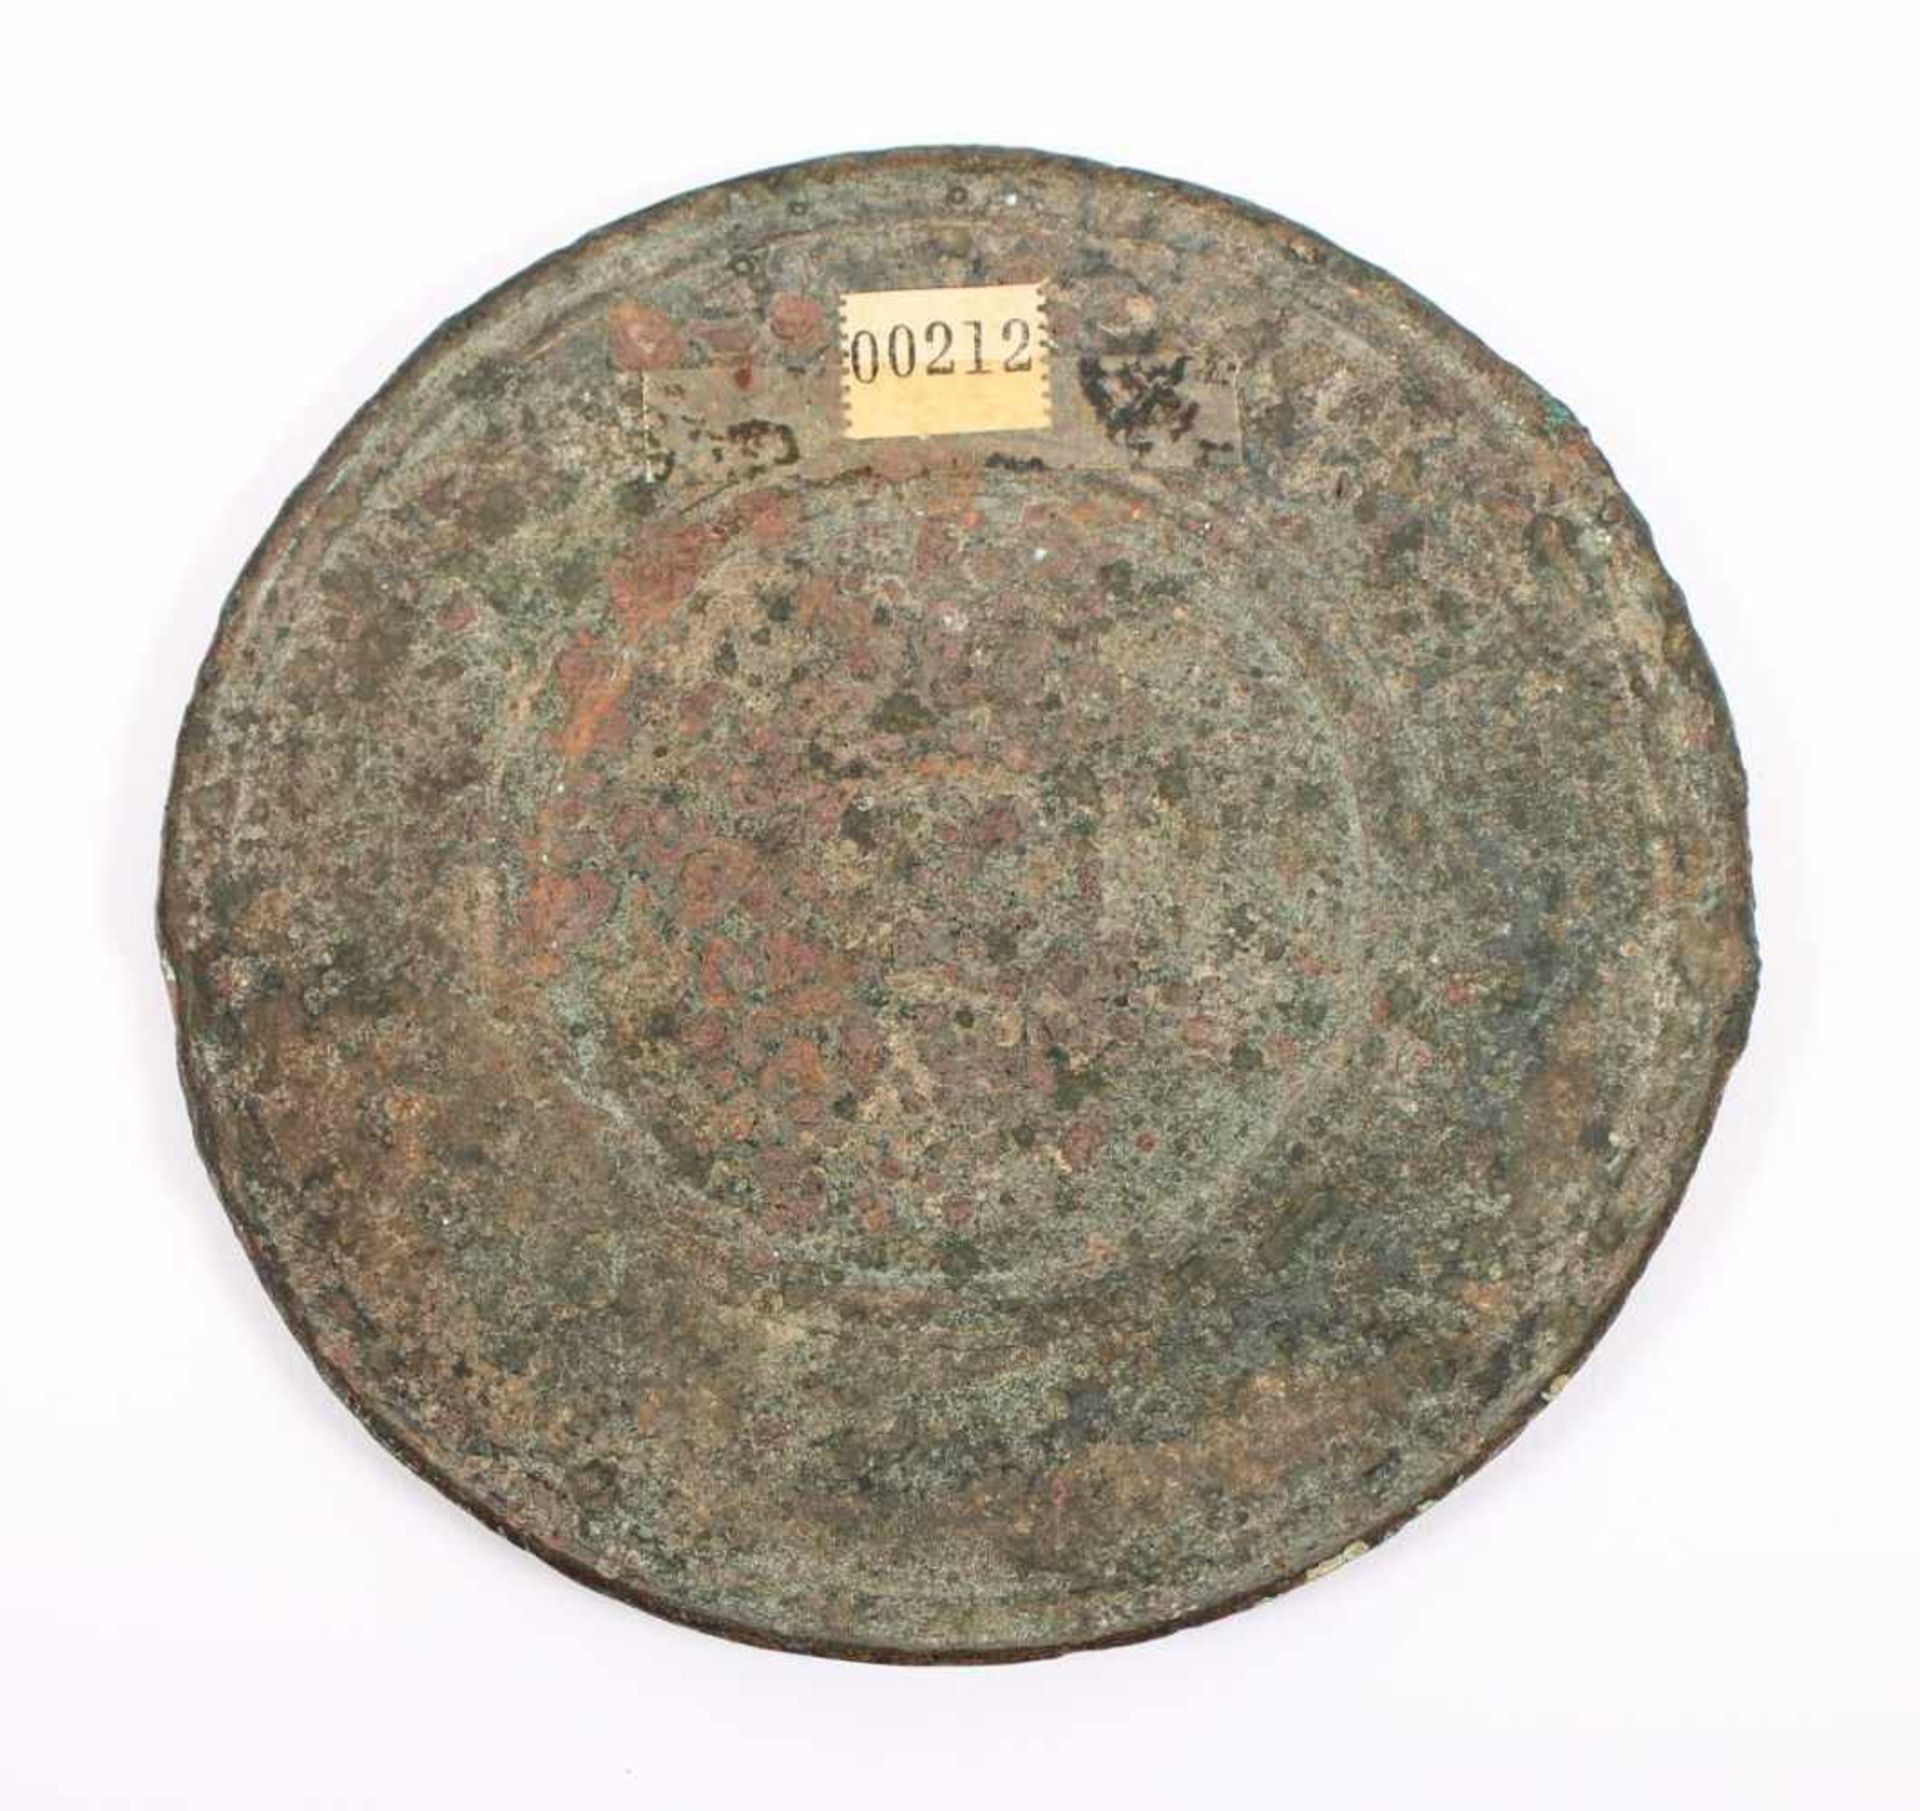 SPIEGELSCHEIBE, Bronze, Dm 15, RÖMISCH, ca.1.-3.Jh.n.Chr. Provenienz: Sammlung Konrad Strehl (1913- - Image 2 of 2